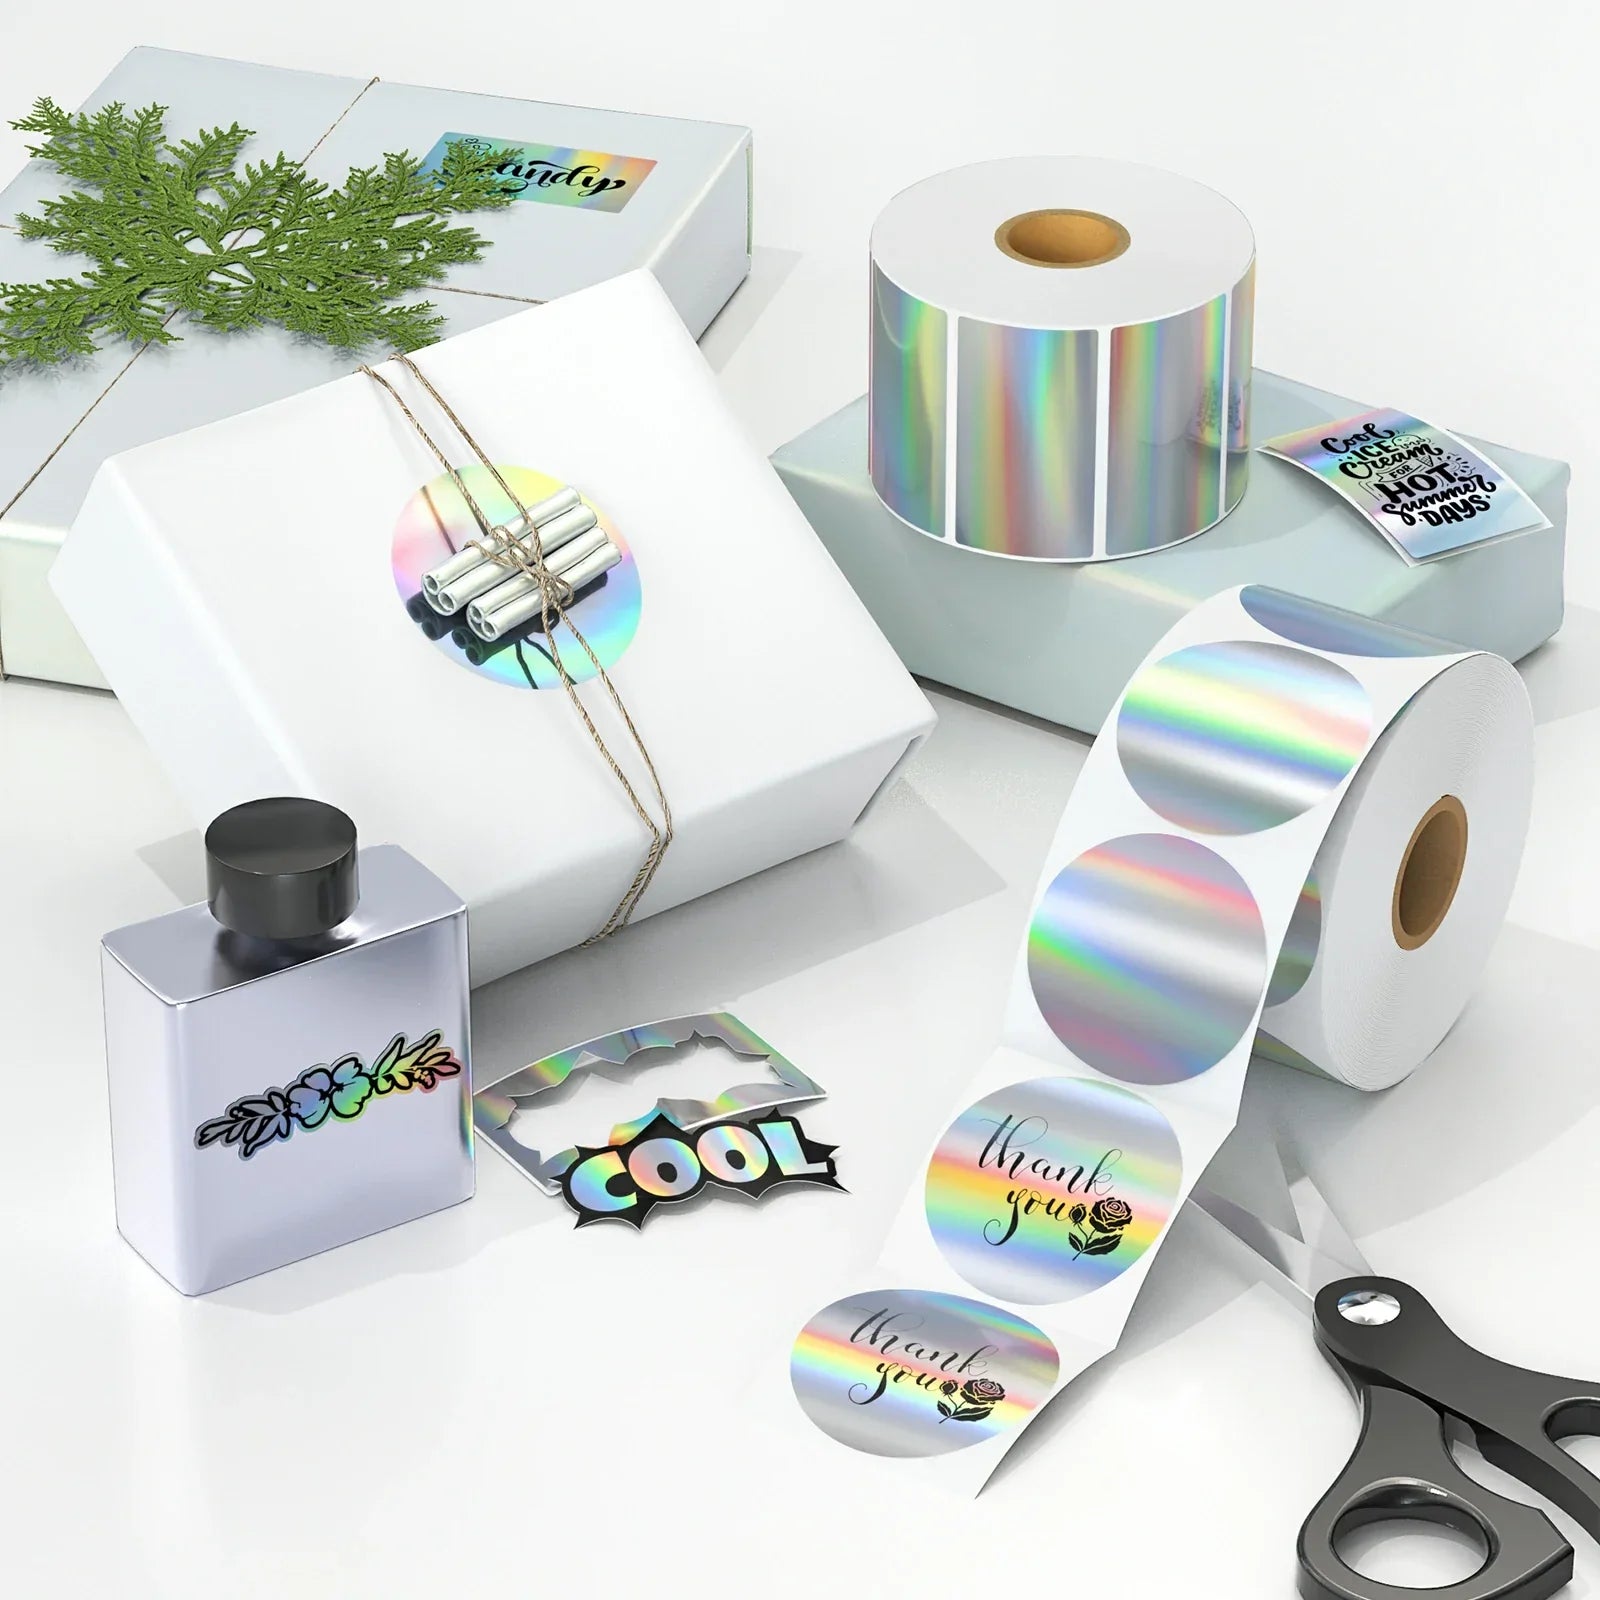 Die holografischen Thermoetiketten von MUNBYN sind wasser-, öl- und kratzfest, bieten einen klaren Aufdruck und eignen sich hervorragend als Produkt- oder Markenetiketten für eine Vielzahl von Materialien.